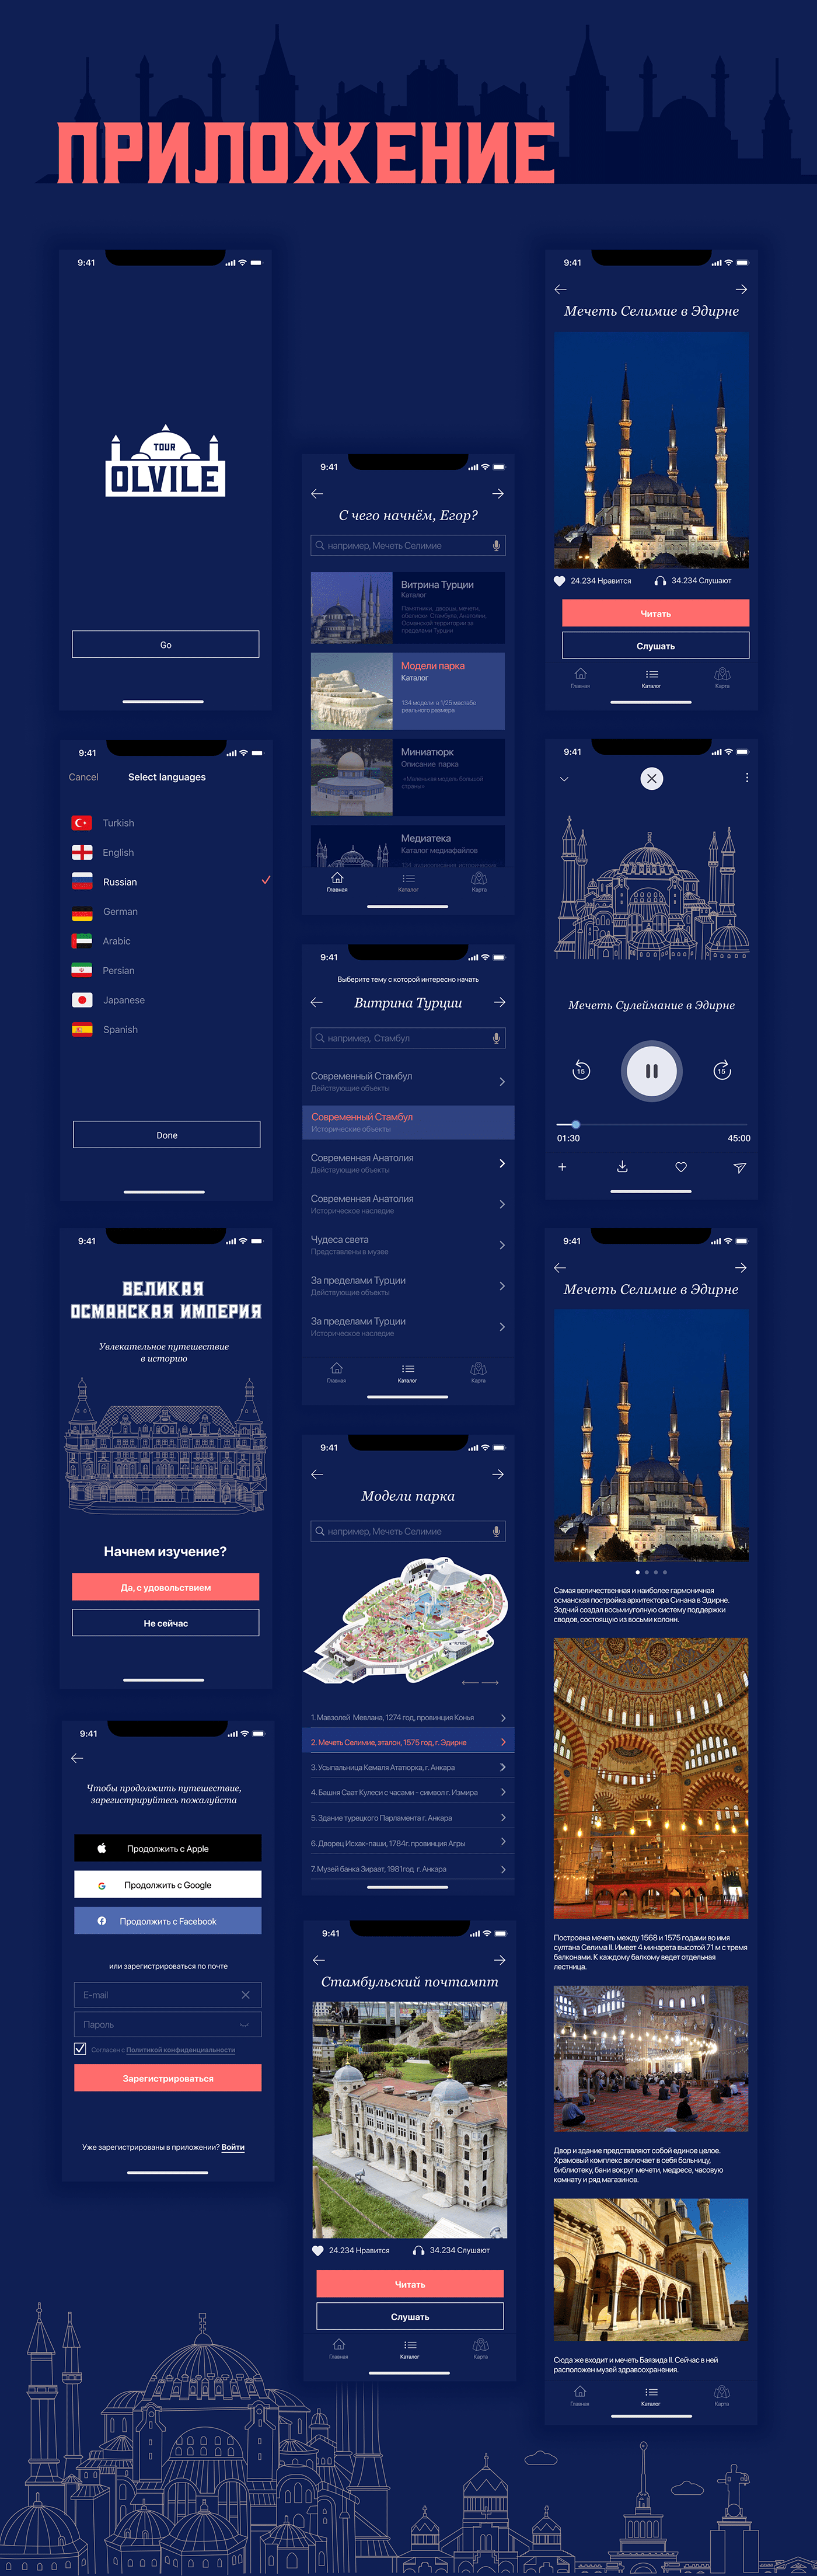 designline dsgnlinegym uxui ИССЛЕДОВАНИЕ музей приложение путешествие Ручнаякладь тур Турция